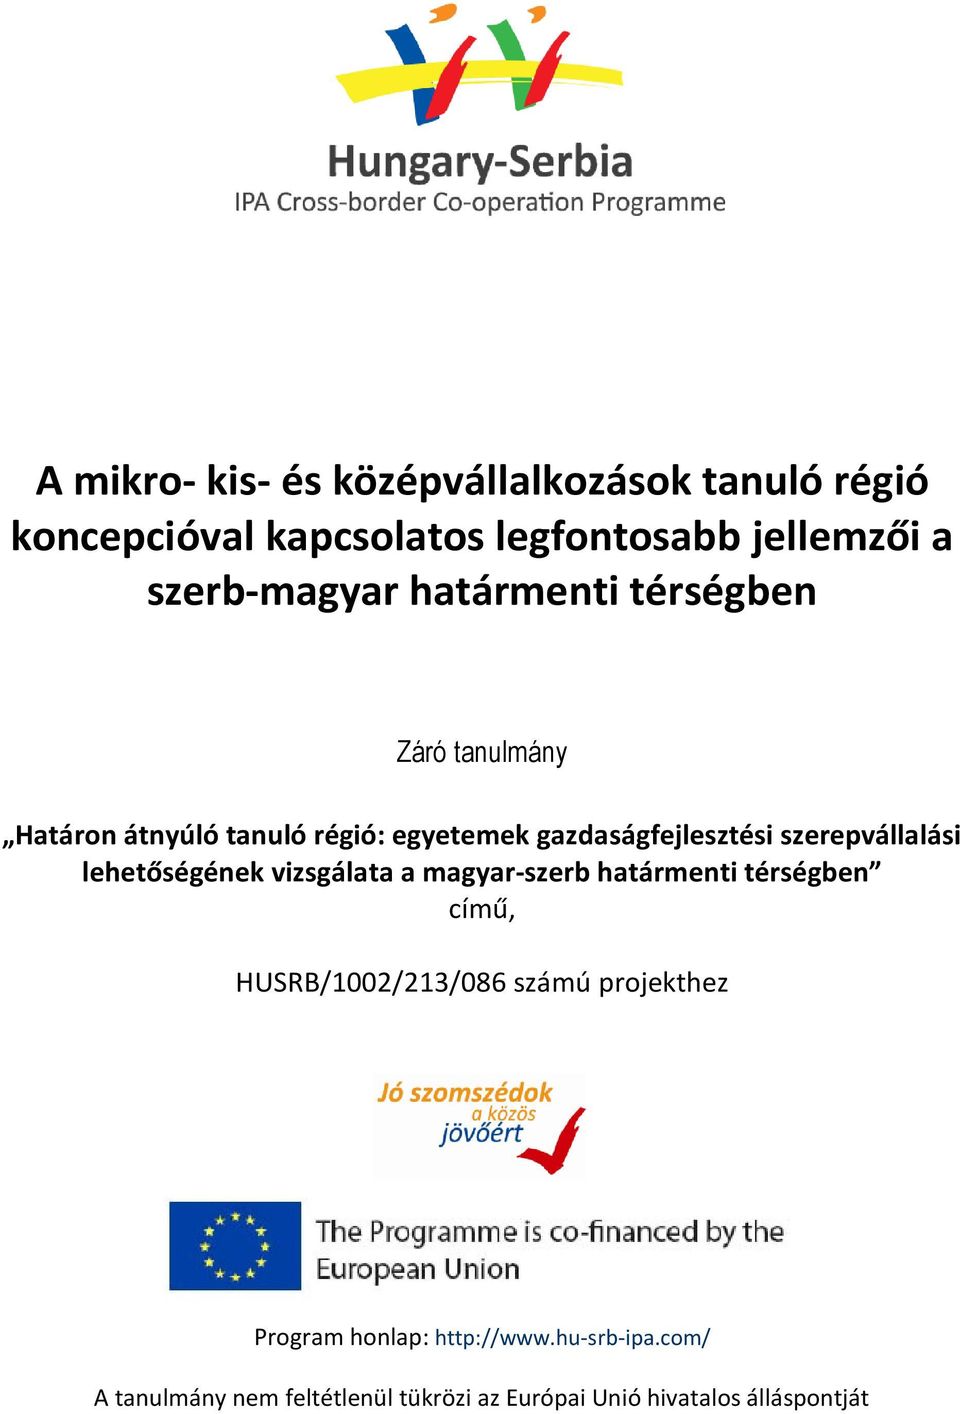 szerepvállalási lehetőségének vizsgálata a magyar-szerb határmenti térségben című, HUSRB/1002/213/086 számú